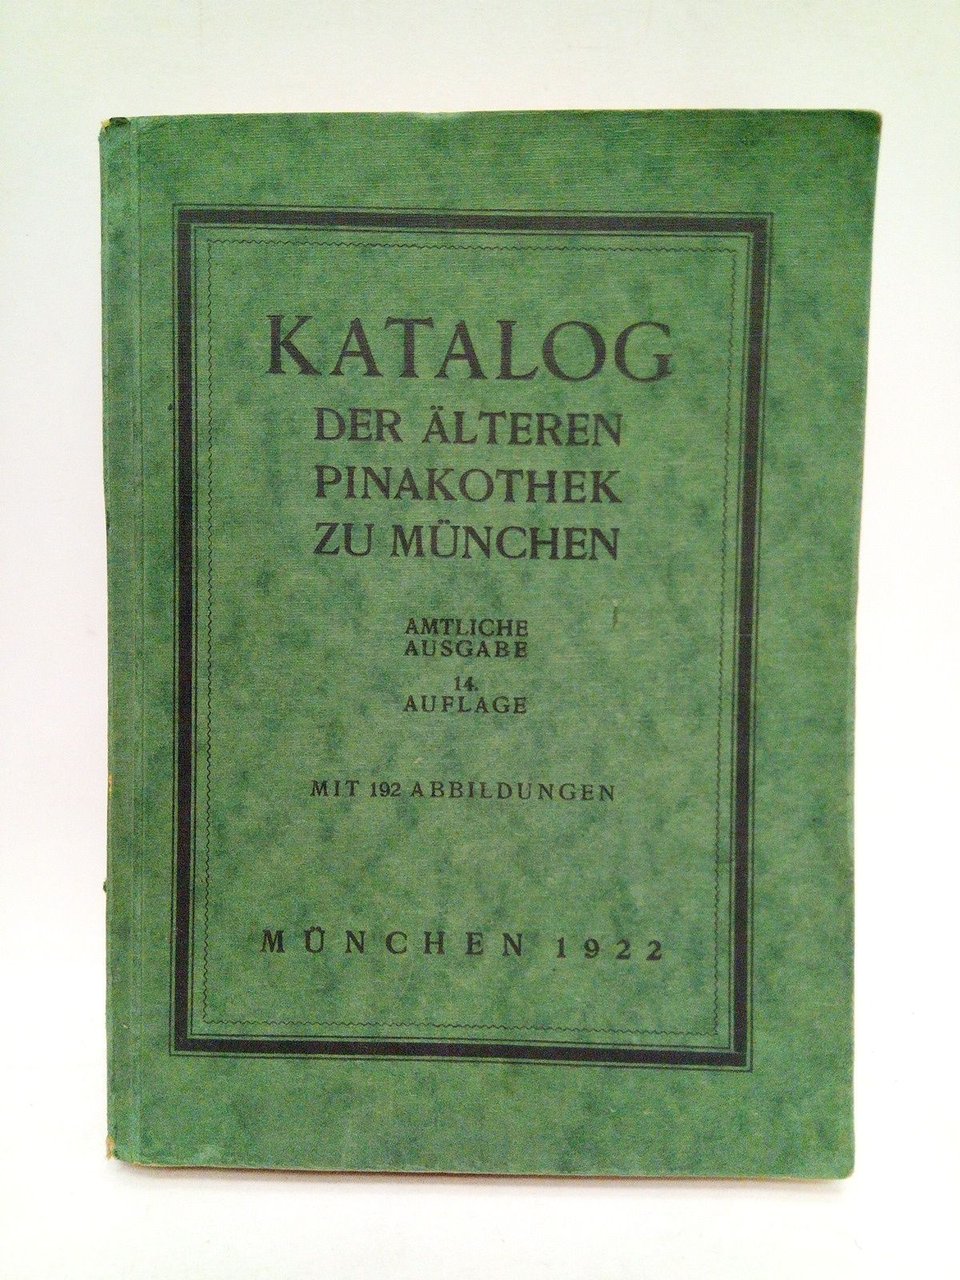 Katalog del Älteren Pinakothek zu München. Amtliche Ausgabe. 14. Auflage. …